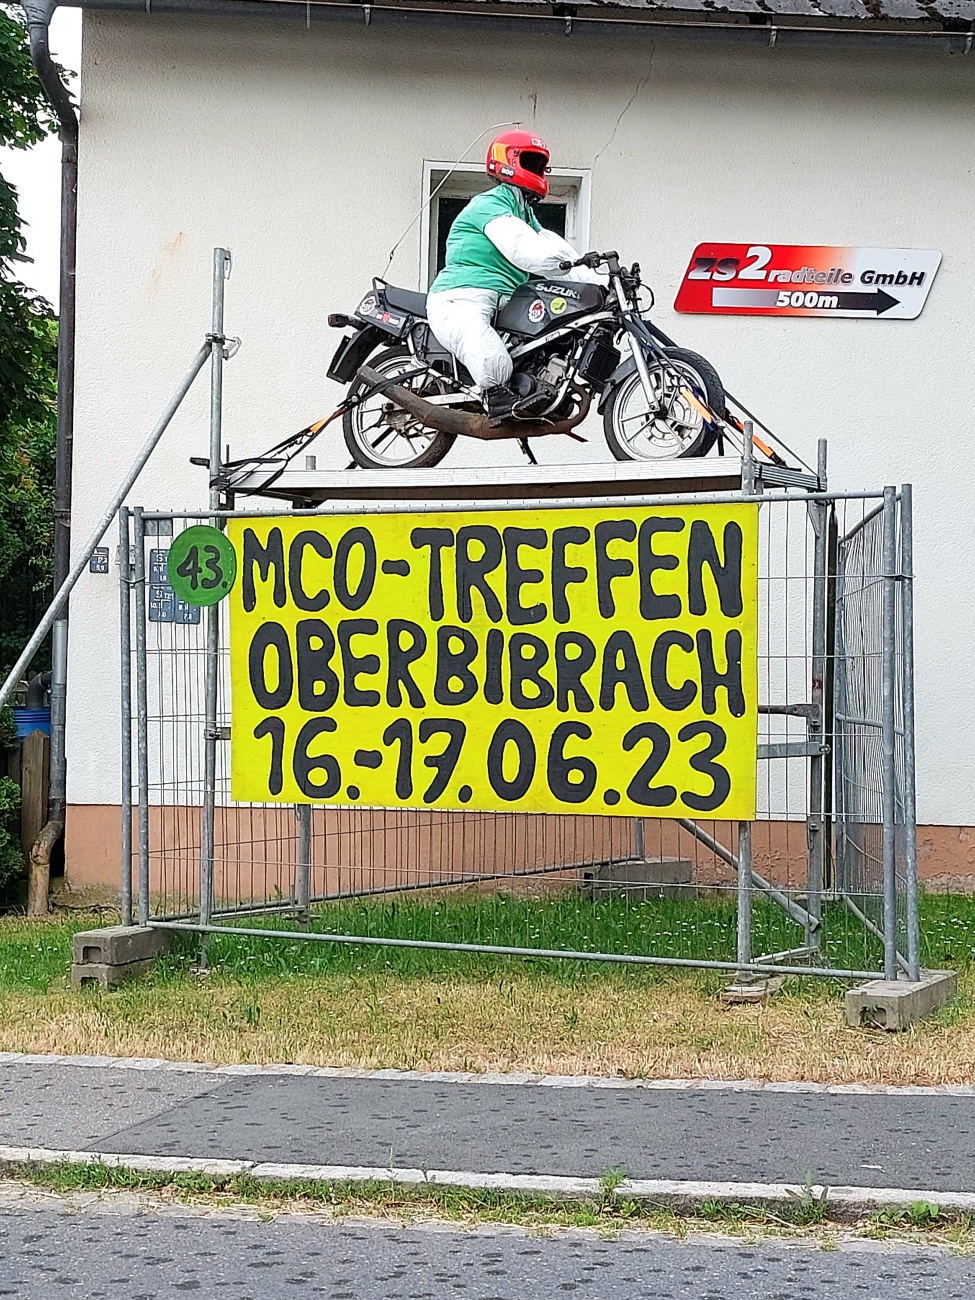 Foto: Martin Zehrer - Er ist schon unterwegs :-D<br />
<br />
MCO-TREFFEN<br />
OBERBIBRACH<br />
16.-17.06.23 